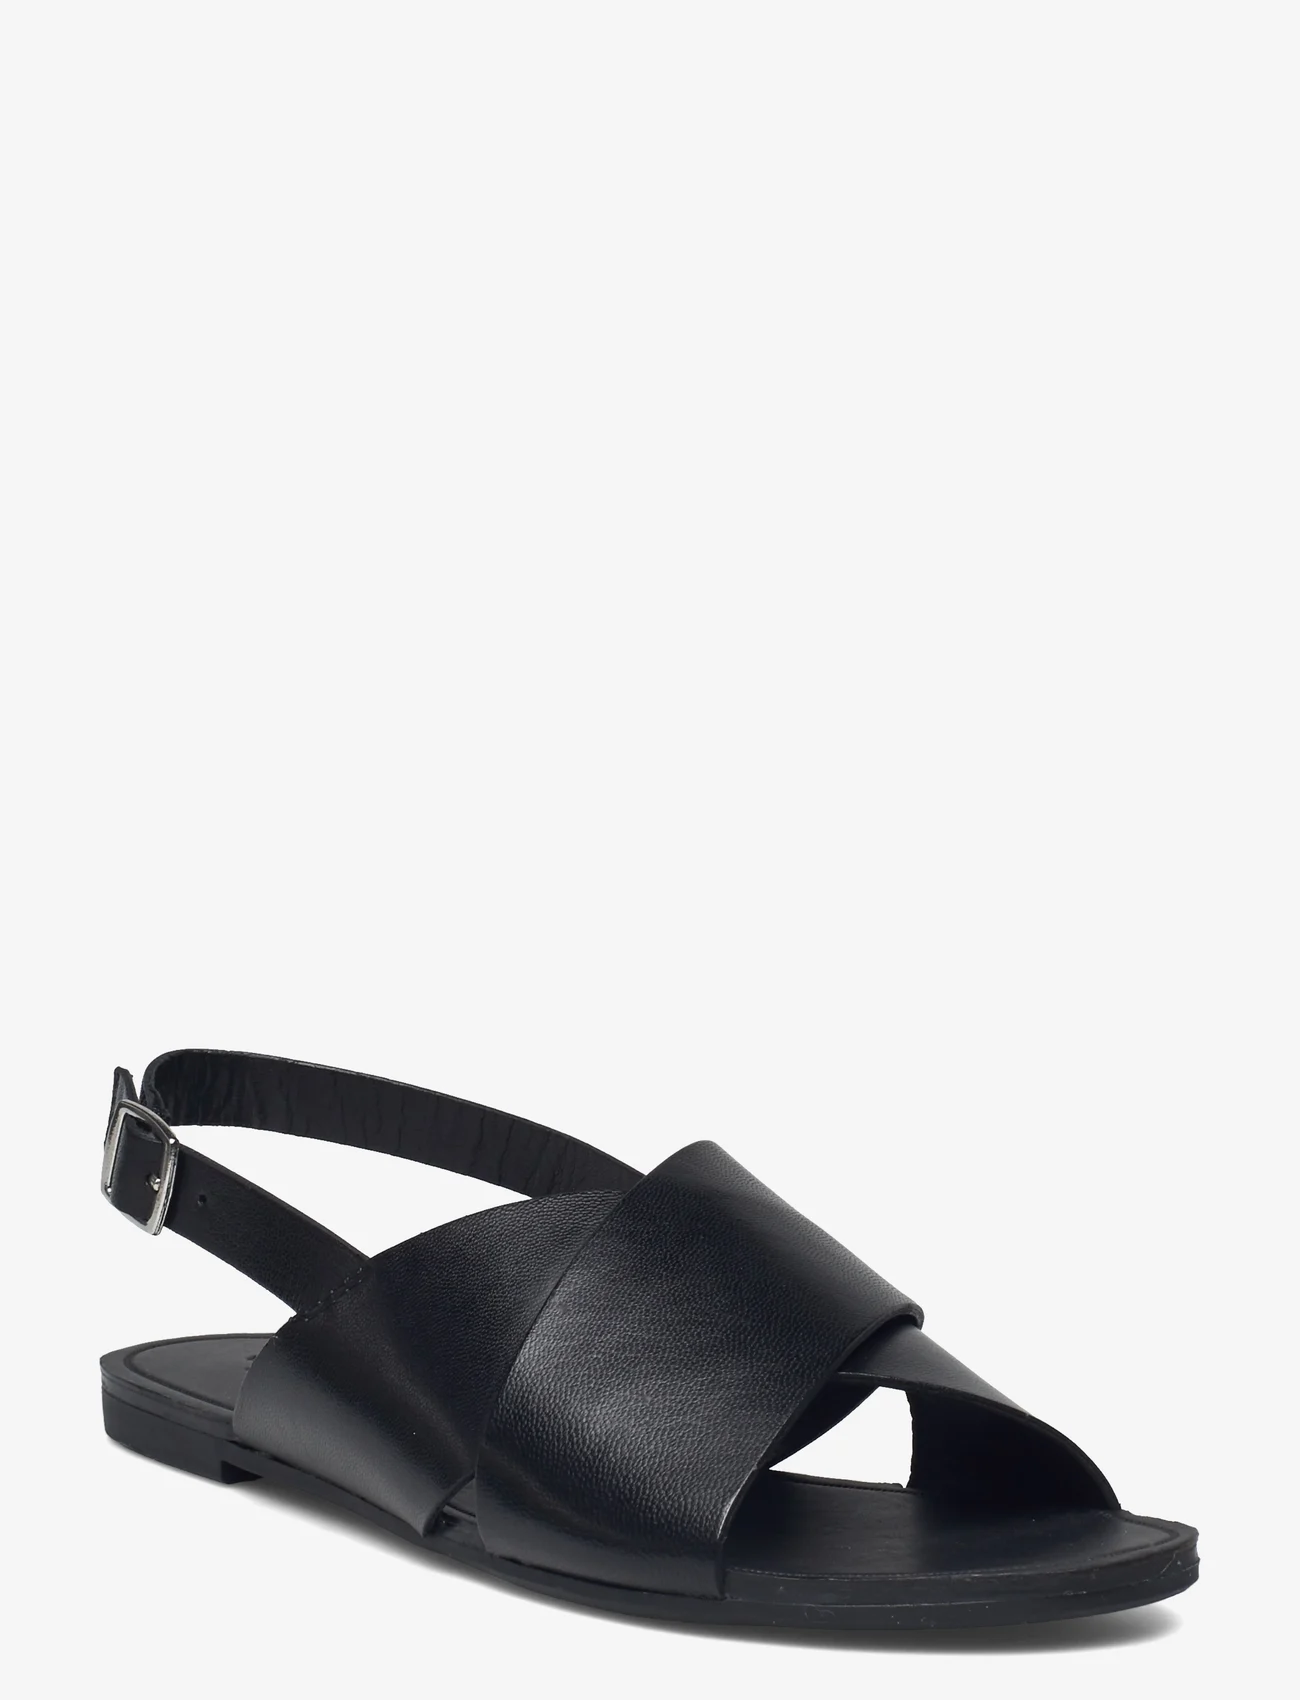 VAGABOND - TIA - flat sandals - black - 0